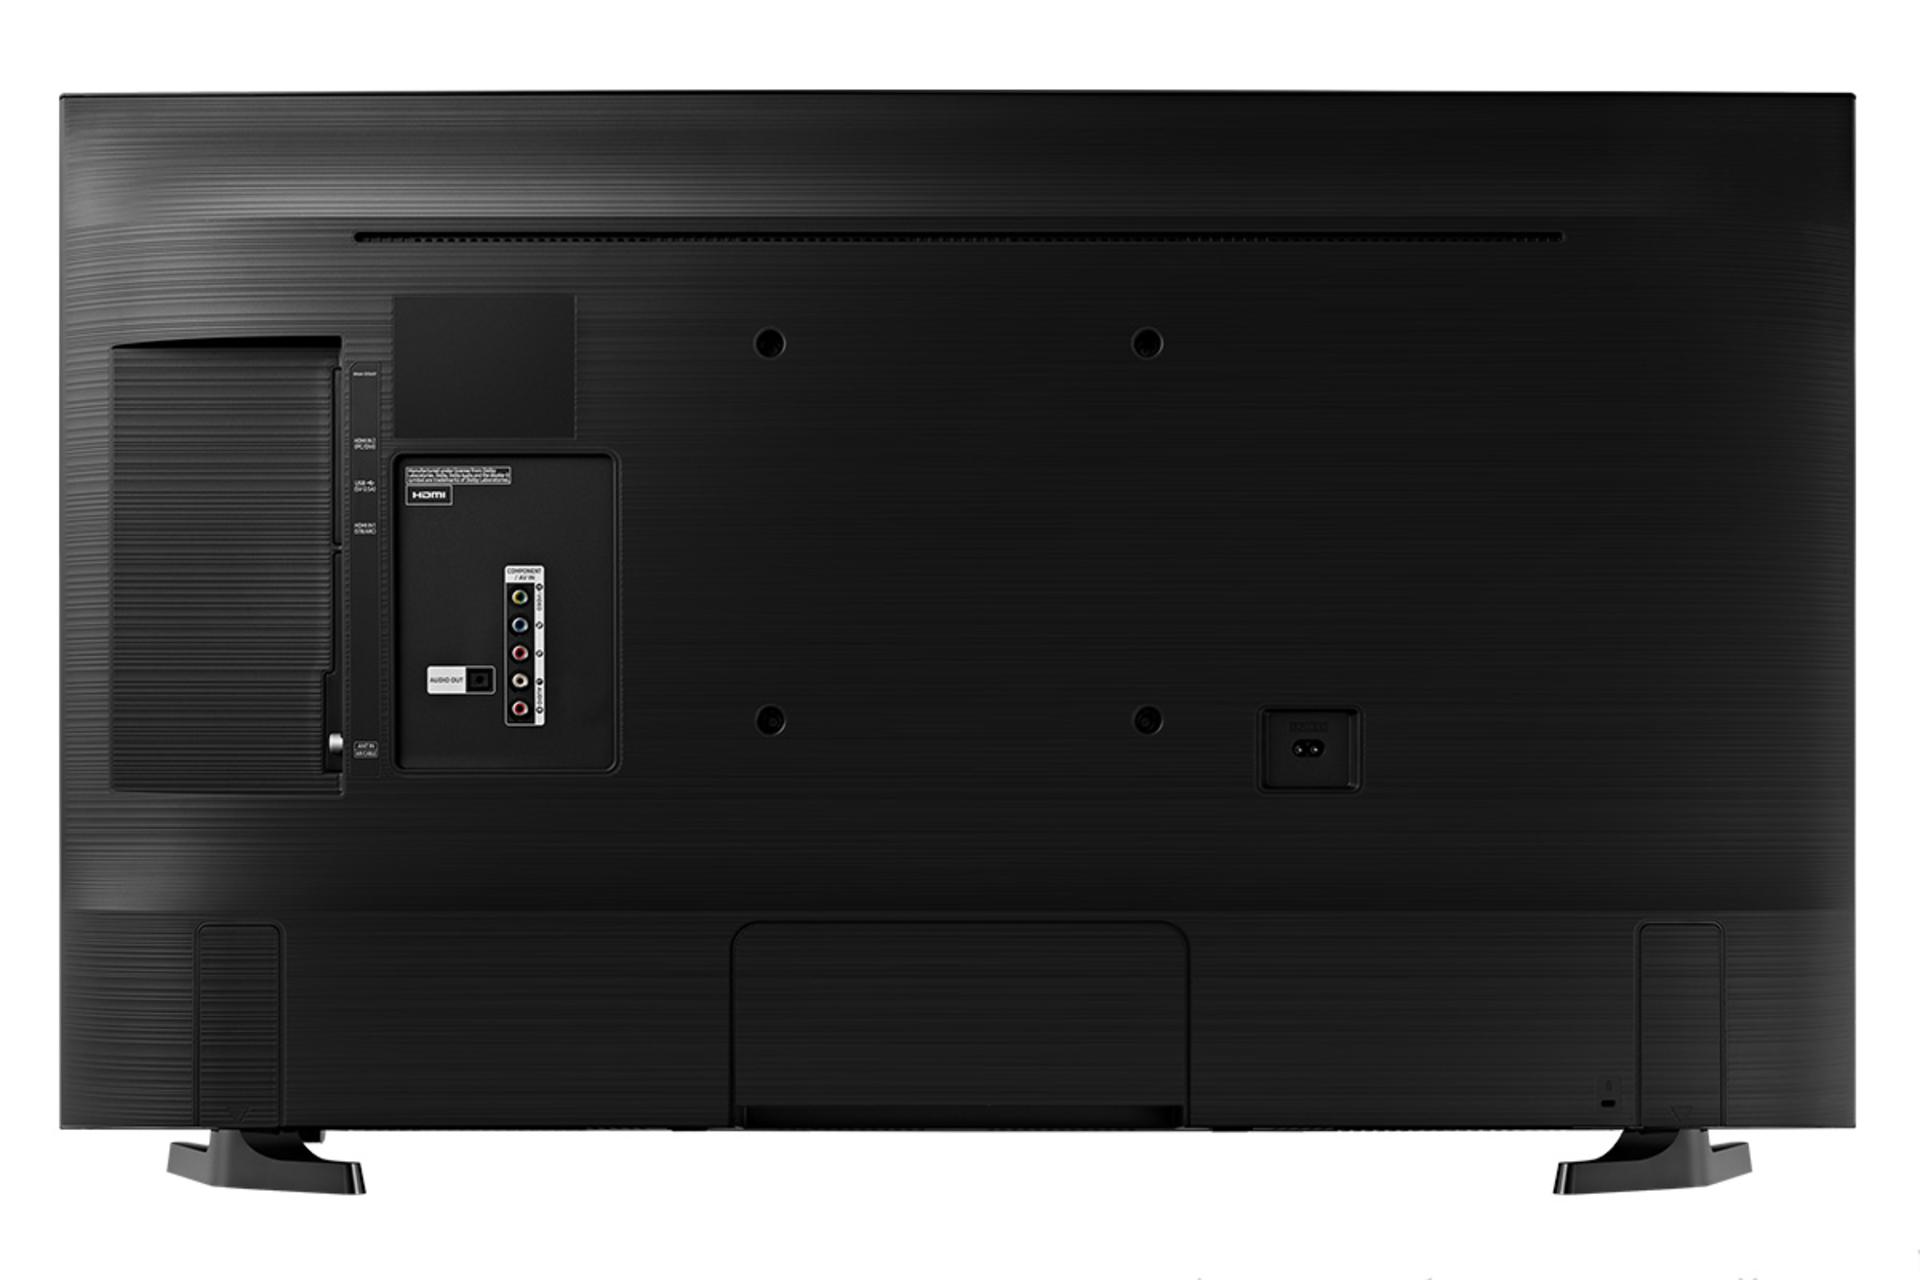 نمای پشت تلویزیون سامسونگ N5000 مدل 40 اینچ و نمایش پورت ها